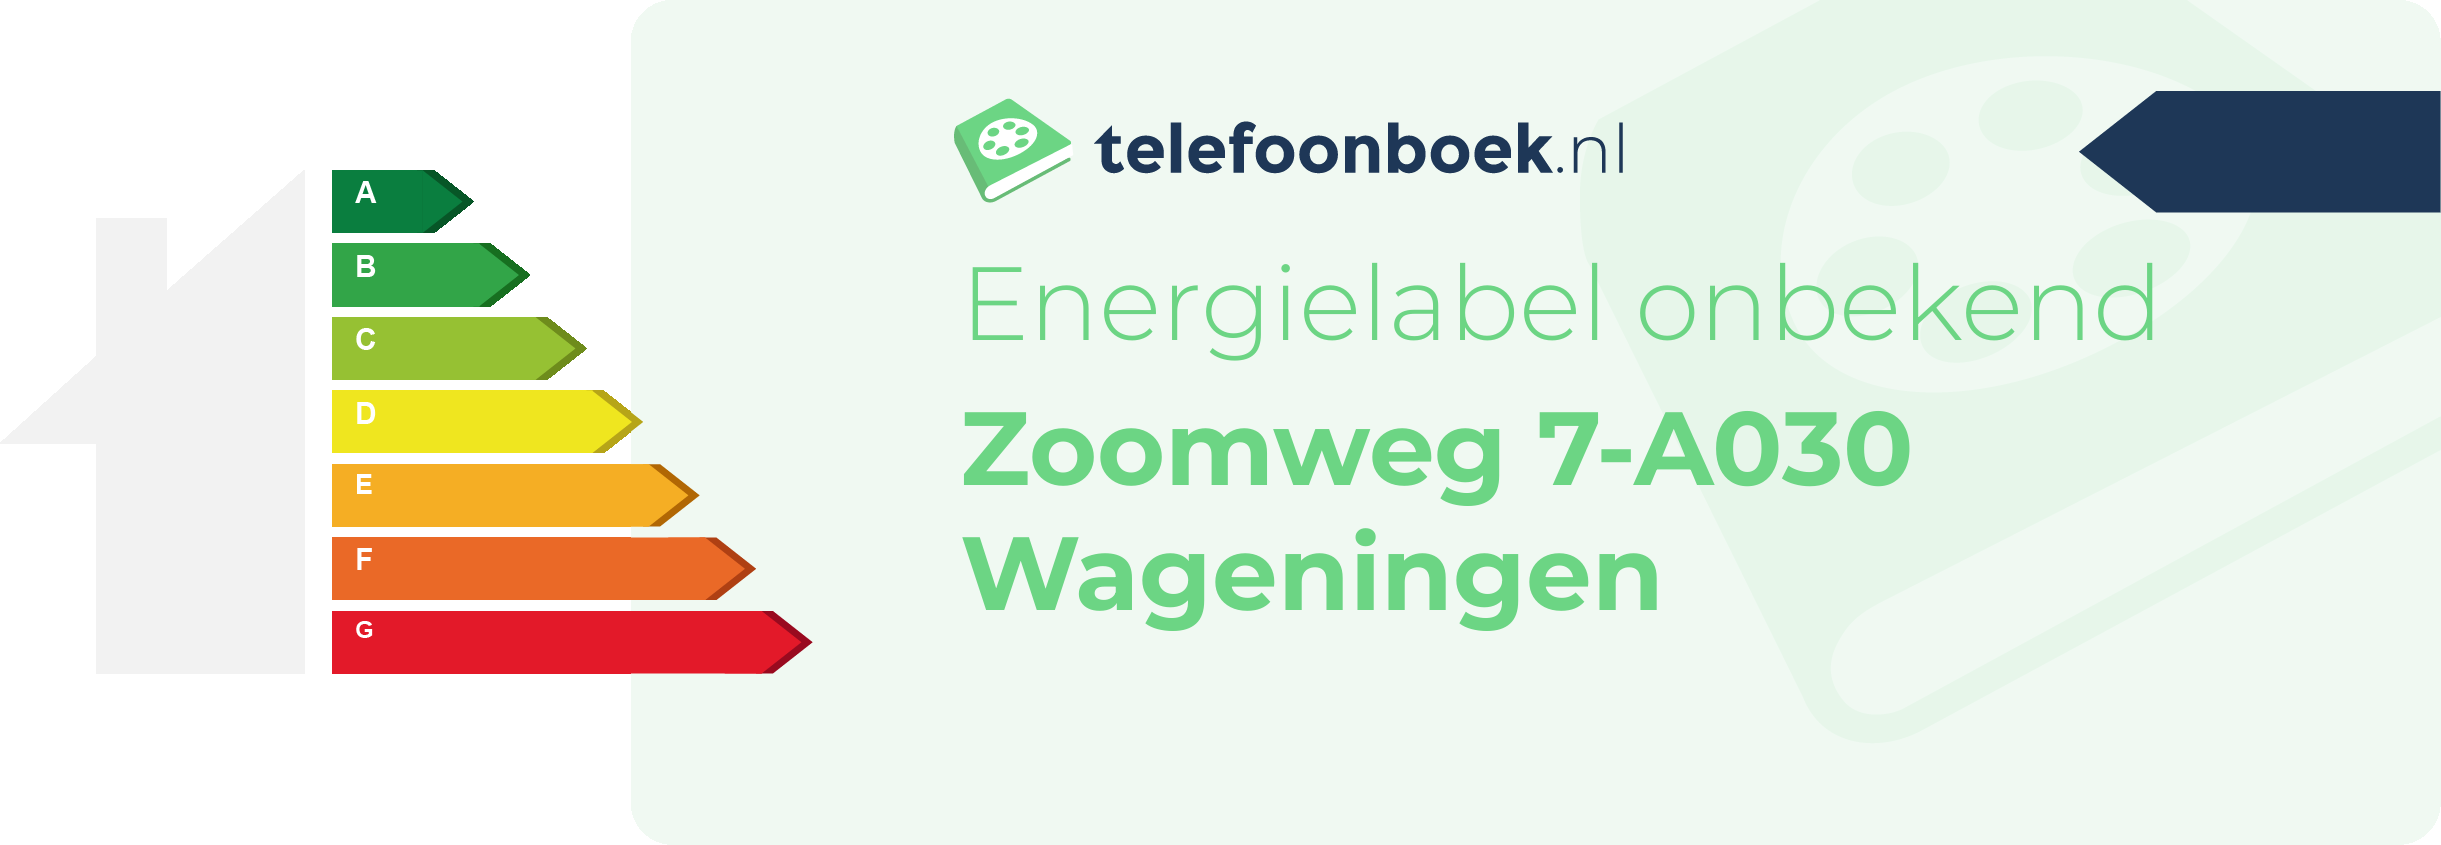 Energielabel Zoomweg 7-A030 Wageningen